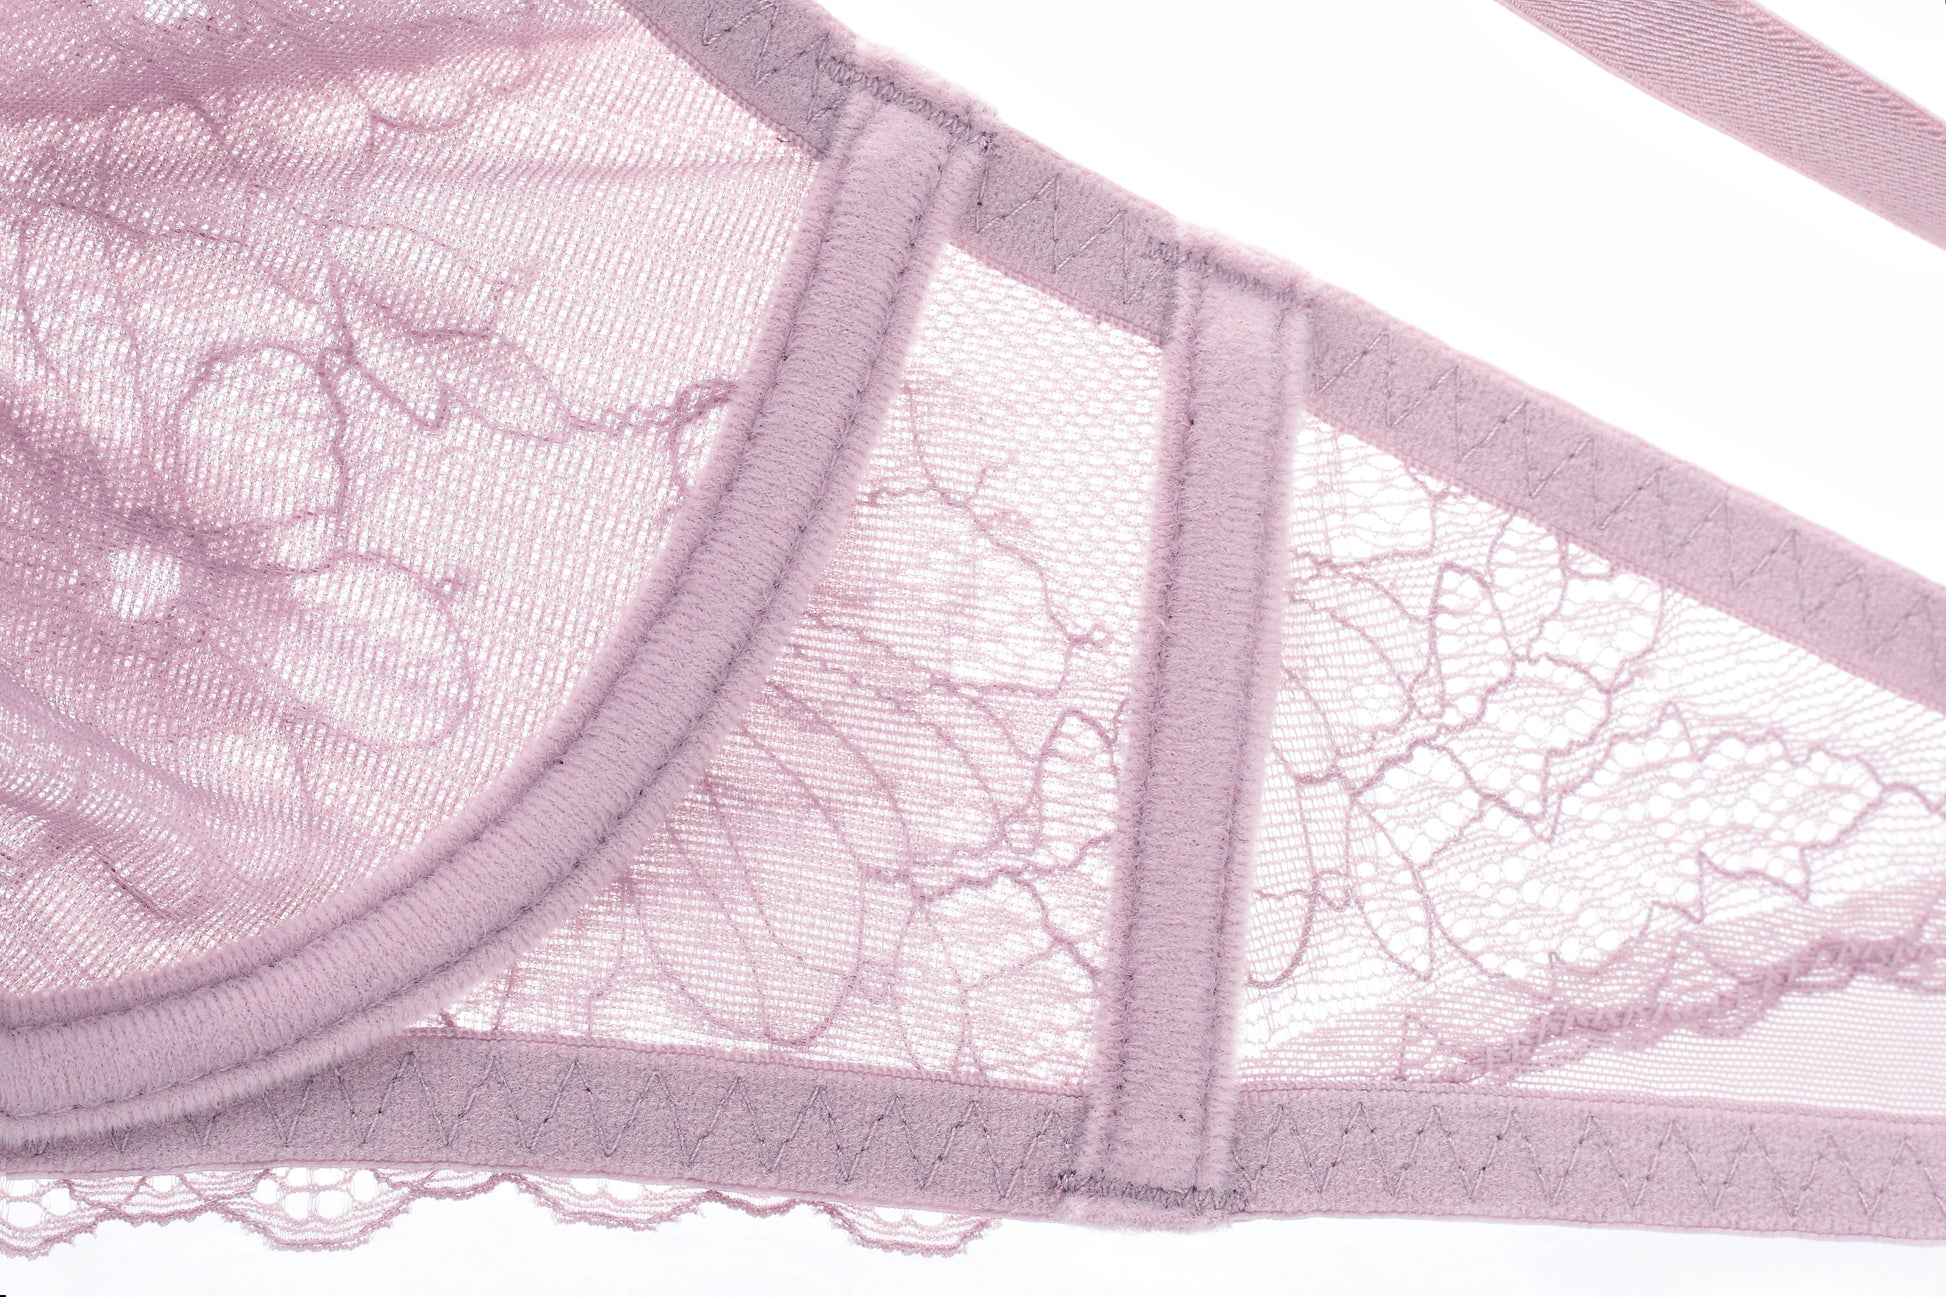 lace lingerie set 2022